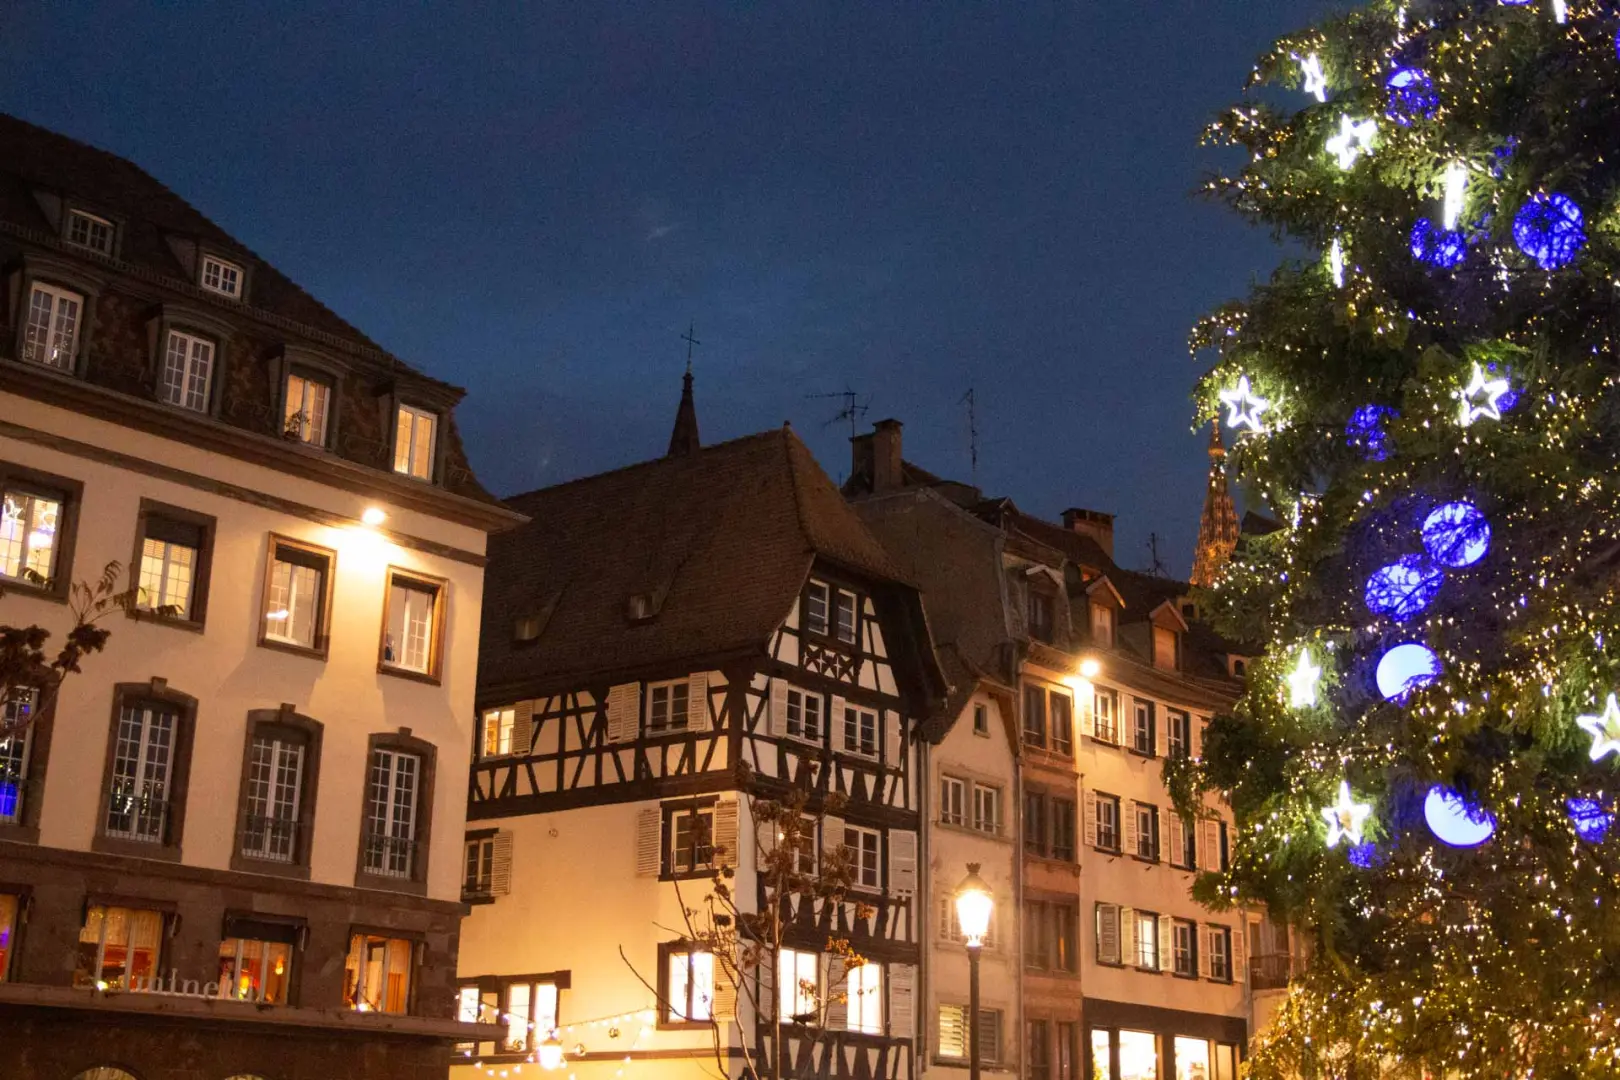 Vive la magia de la navidad en los pueblos más bonitos de esta región francesa. Llenos de viñedos y un ambiente mágico. Iremos a Colmar, Friburgo...